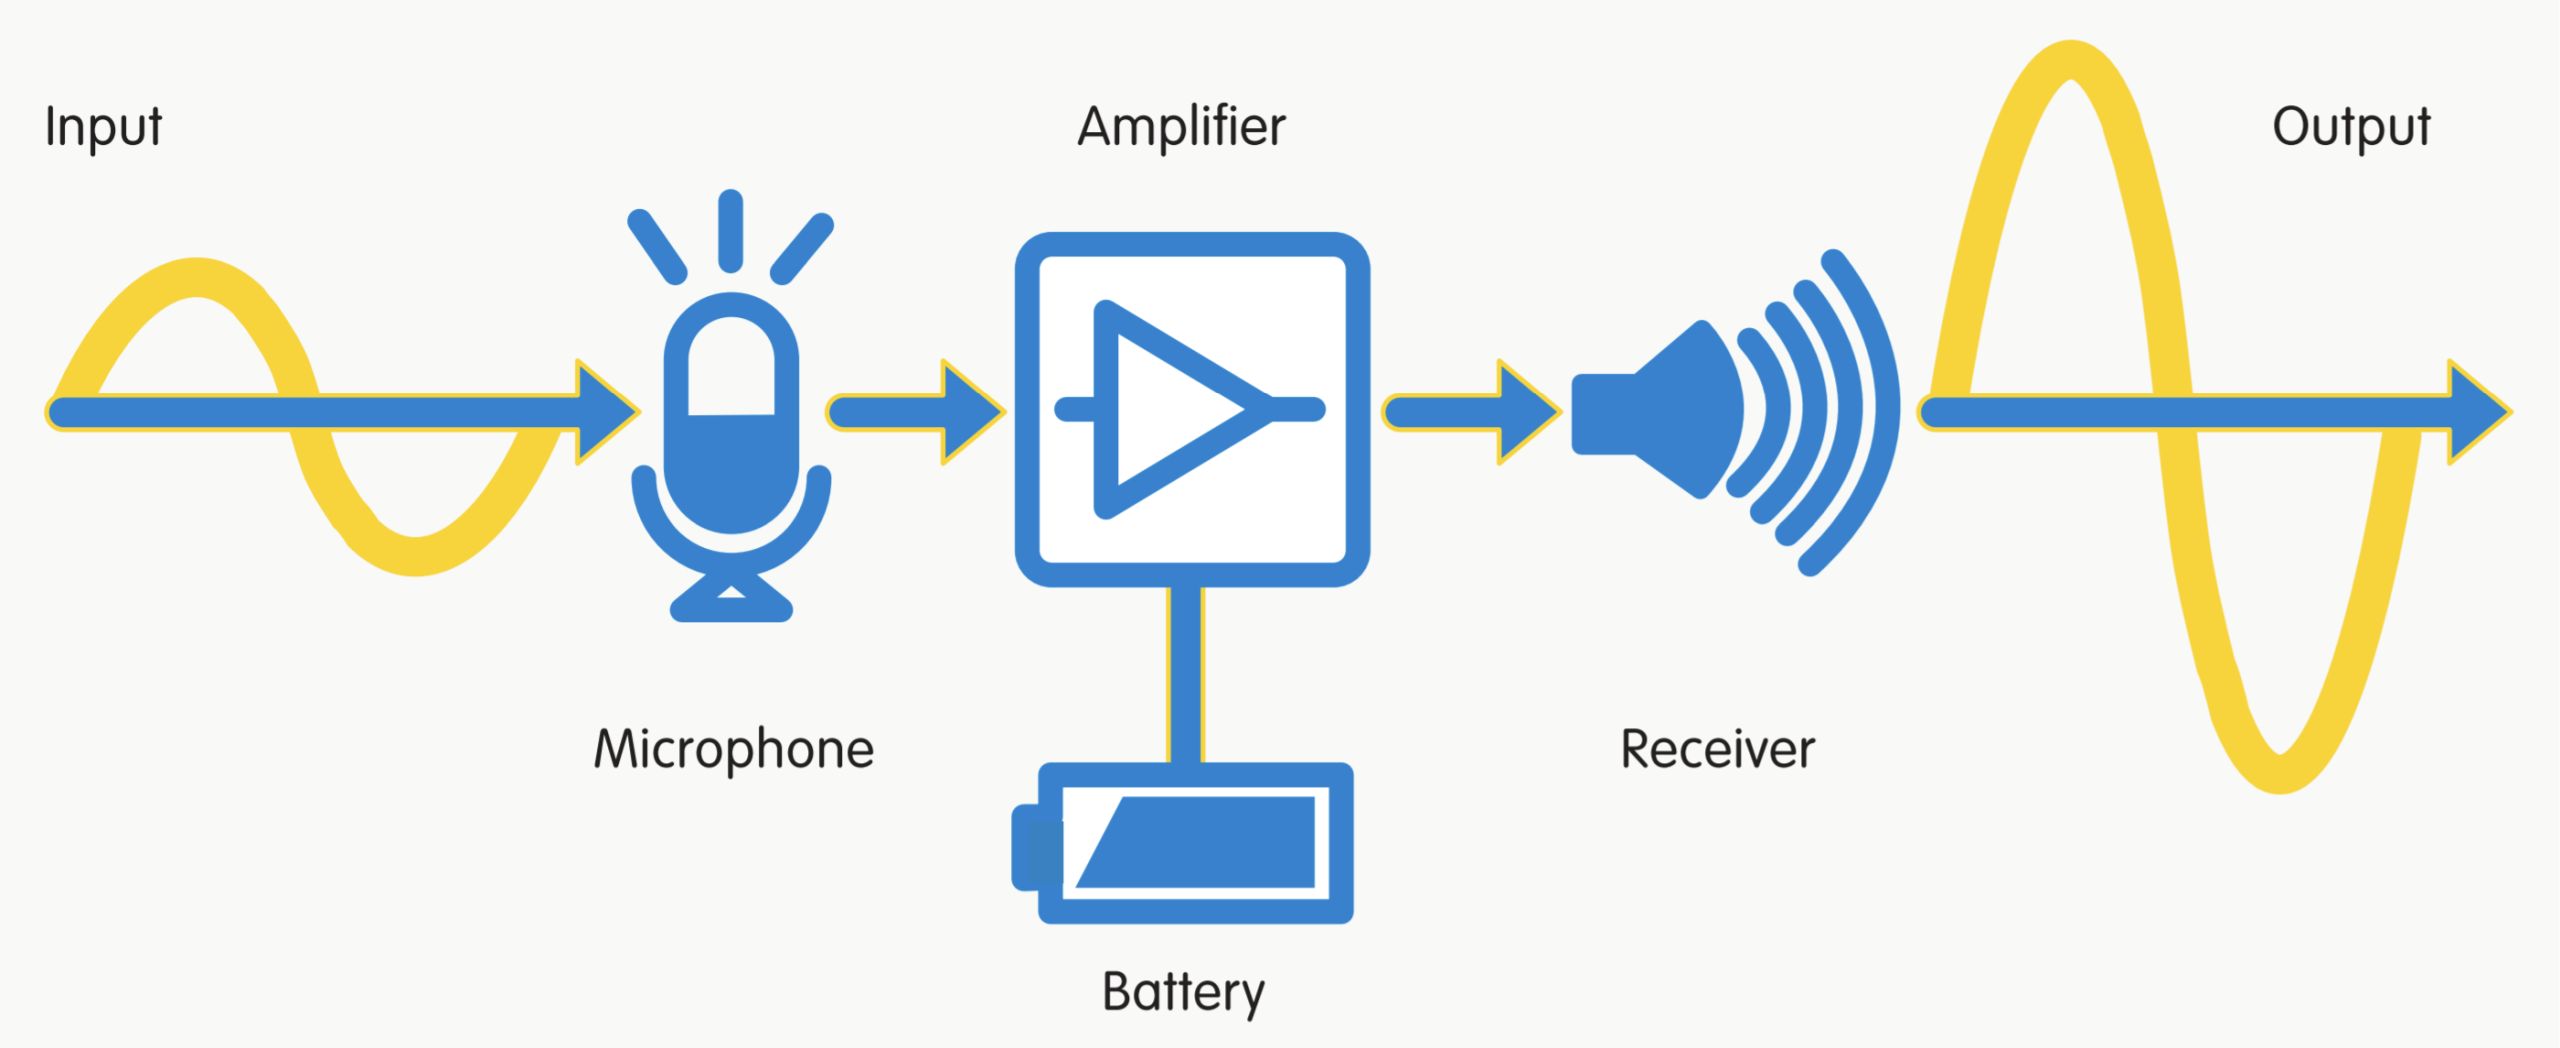 opamps amplificacion - Que son los Amplificadores operacionales en la electrónica y usos